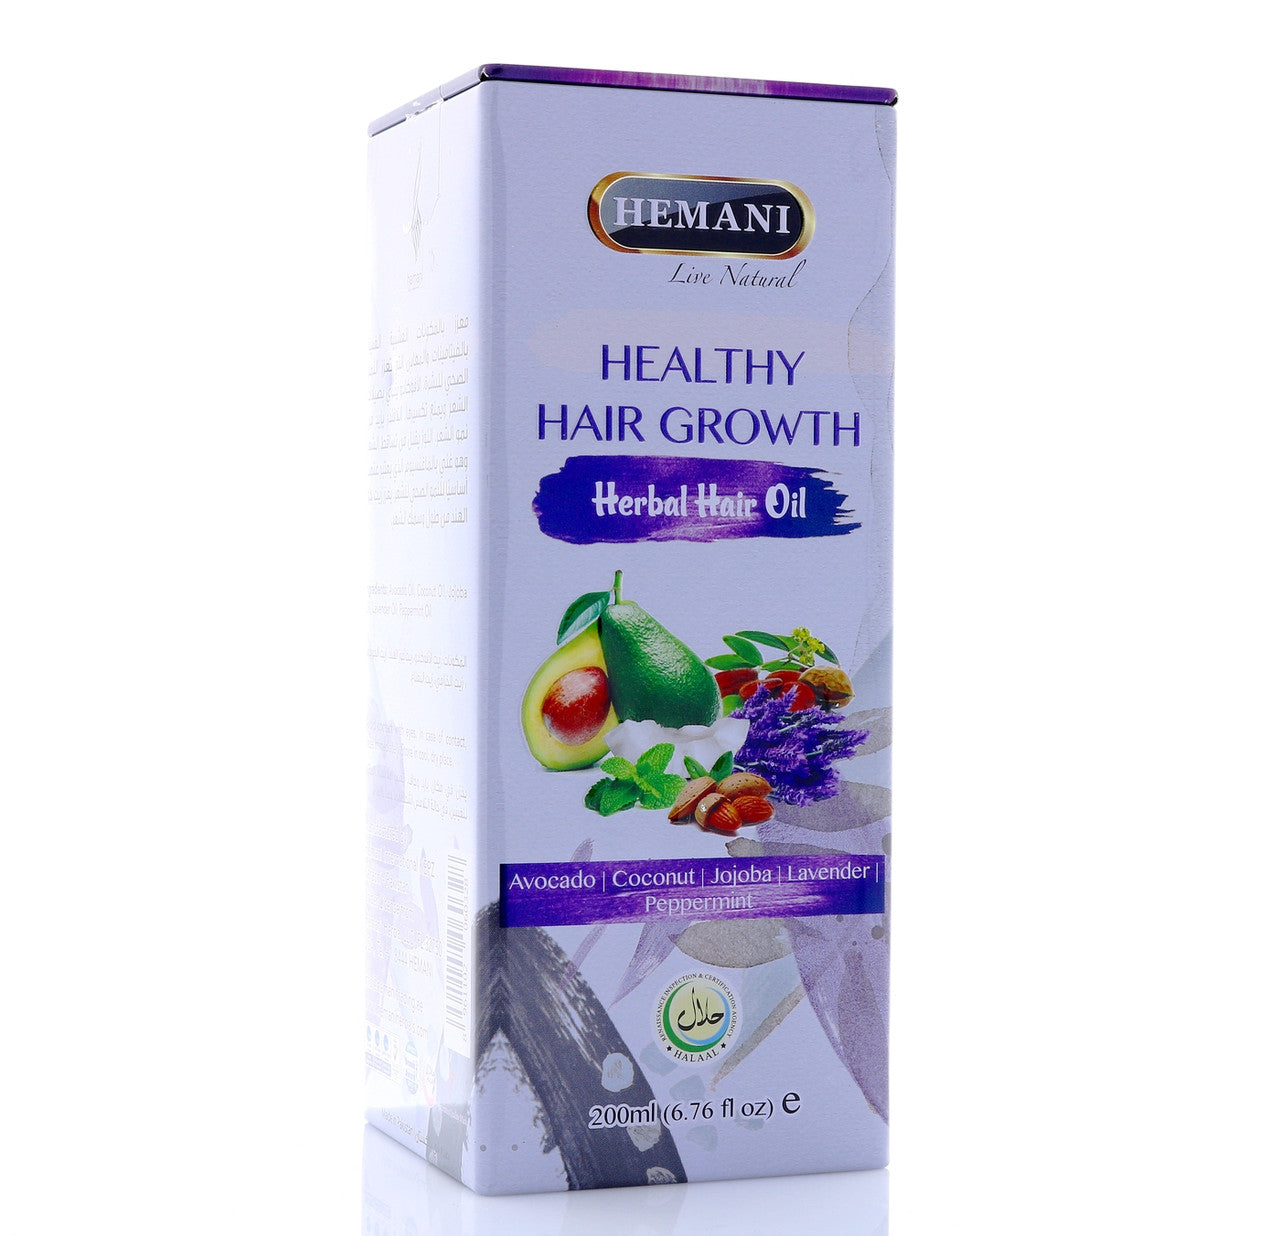 HEMANI Hair Growth Hair Oil 200mL